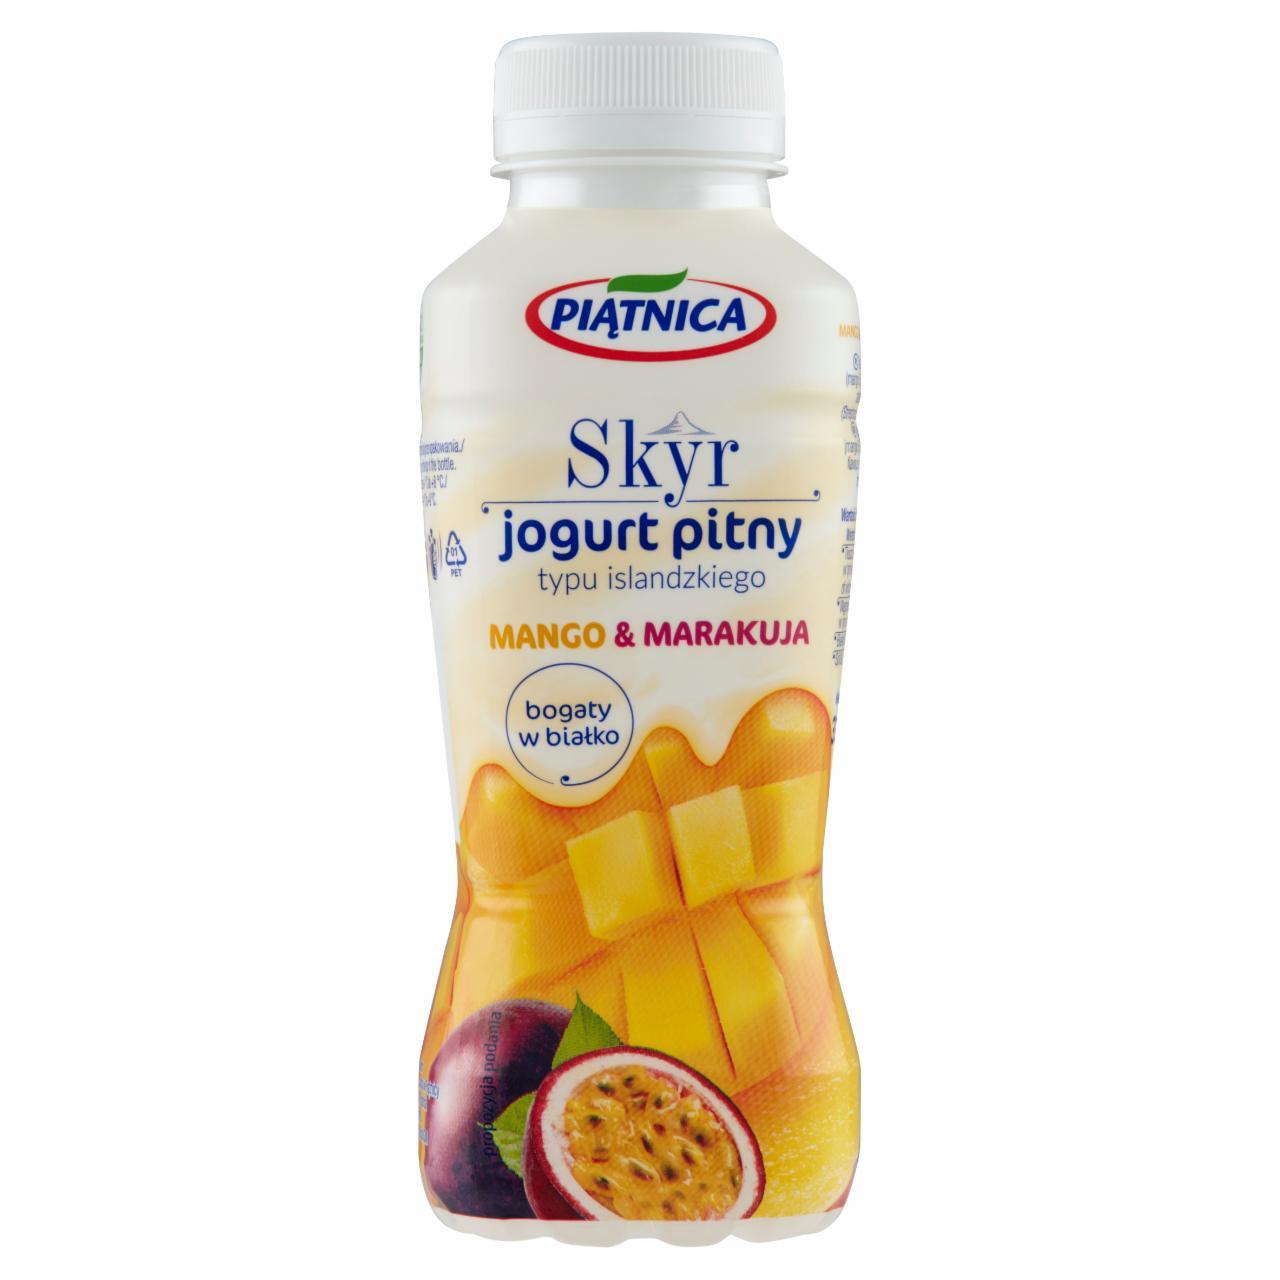 Zdjęcia - Skyr jogurt pitny typu islandzkiego mango i marakuja piątnica